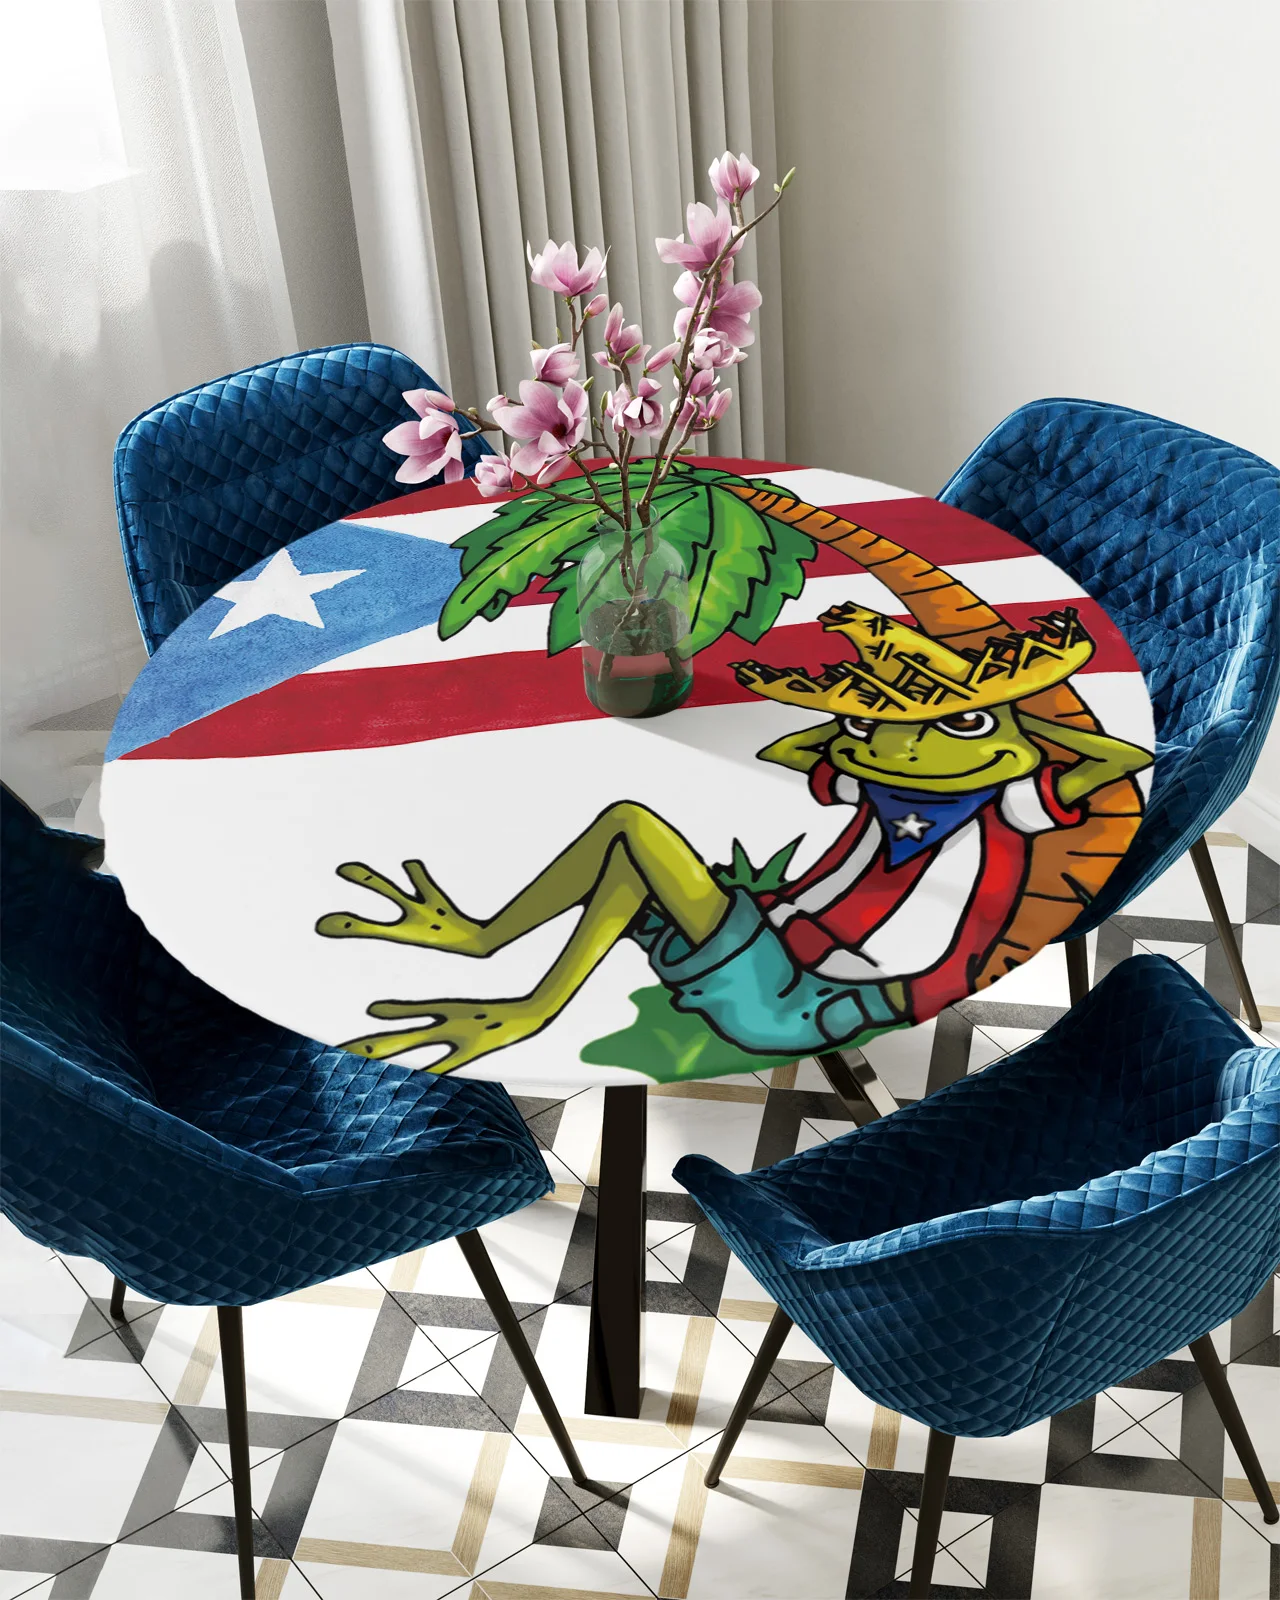 

Круглая прямоугольная скатерть с флагом Пуэрто-Рико, лягушкой, пальмой, водонепроницаемая эластичная скатерть для украшения дома